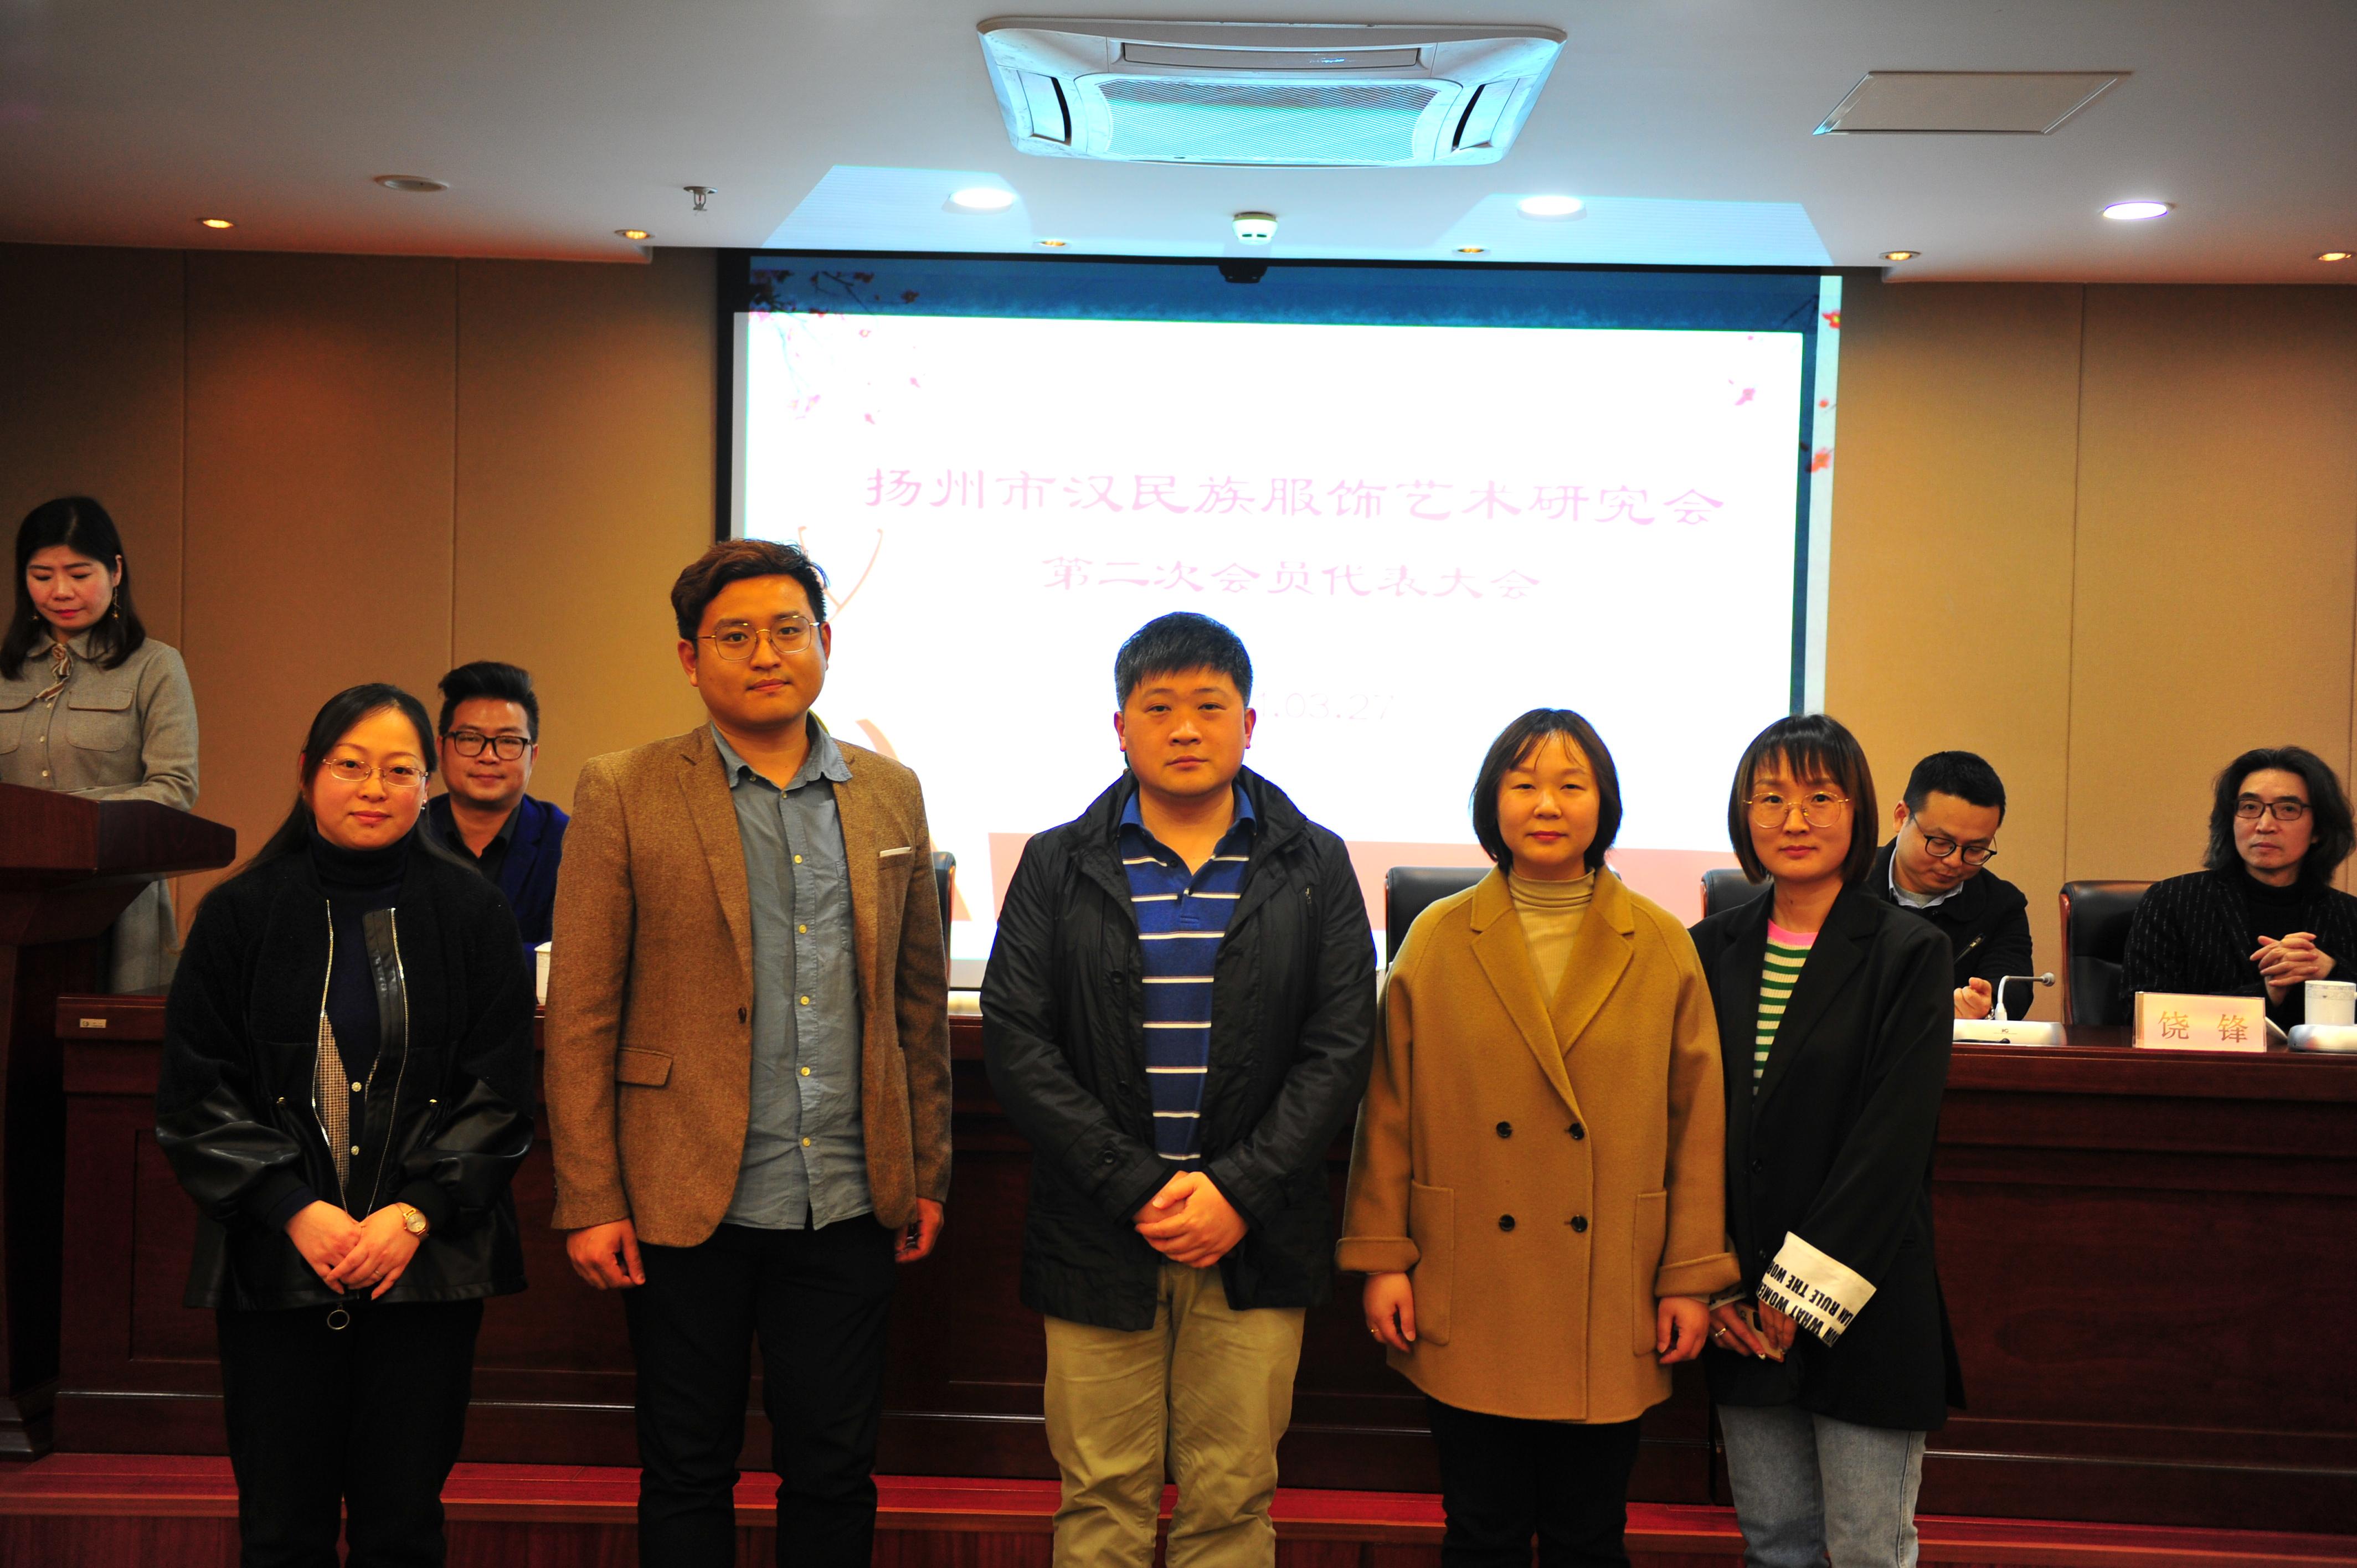 扬州市汉民族服饰艺术研究会召开第二次会员代表大会  选举产生新一届领导班子